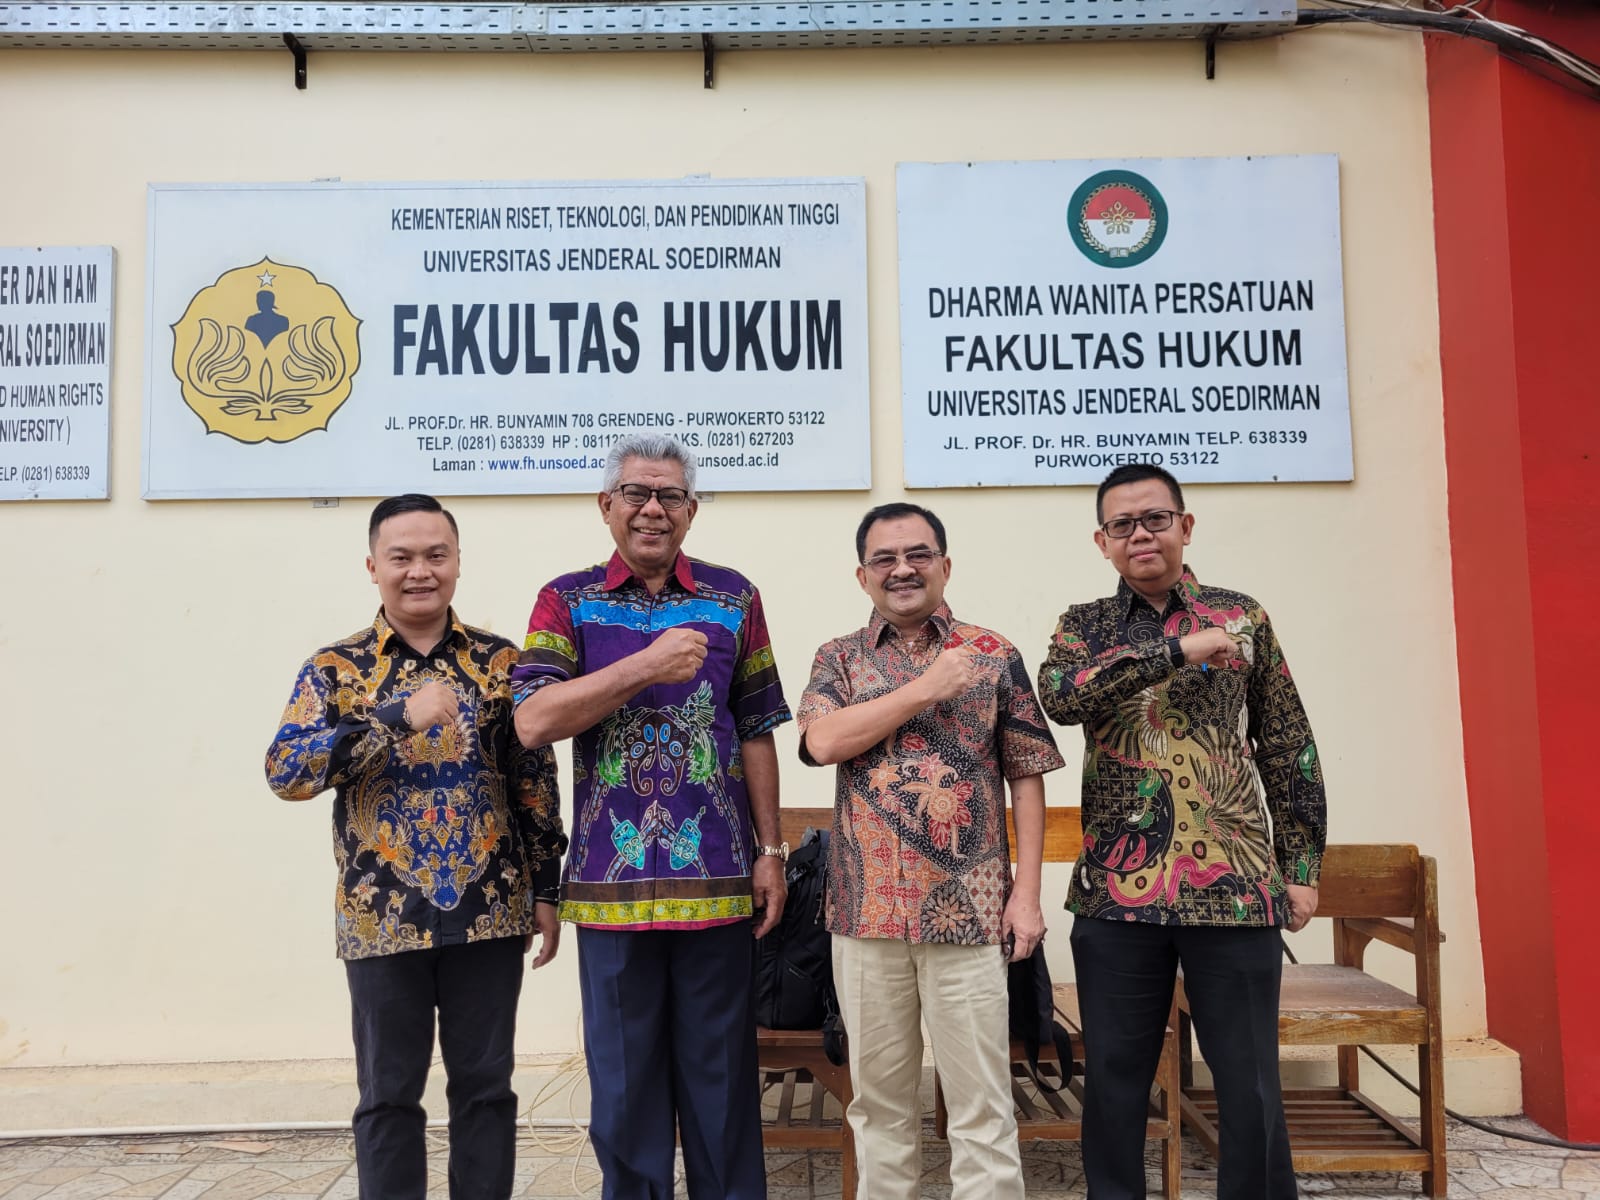 Kunjungan Benchmarking Fakultas Hukum UPN Veteran Jakarta Ke Fakultas Hukum Universitas Jenderal Soedirman (1)